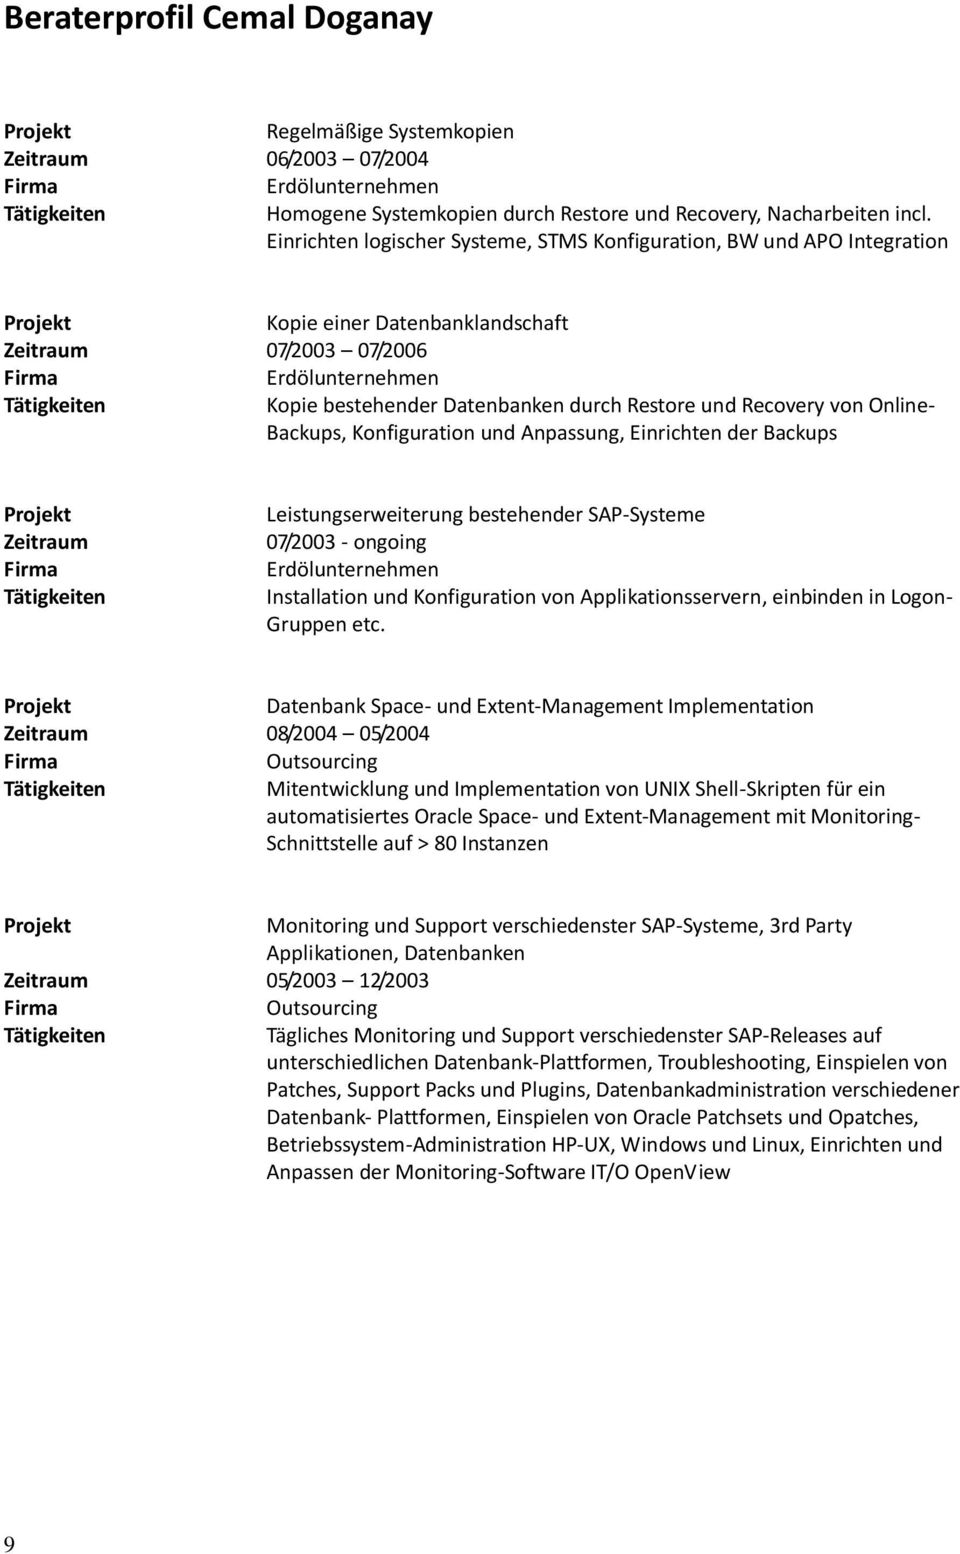 Backups, Konfiguration und Anpassung, Einrichten der Backups Zeitraum Leistungserweiterung bestehender SAP-Systeme 07/2003 - ongoing Installation und Konfiguration von Applikationsservern, einbinden